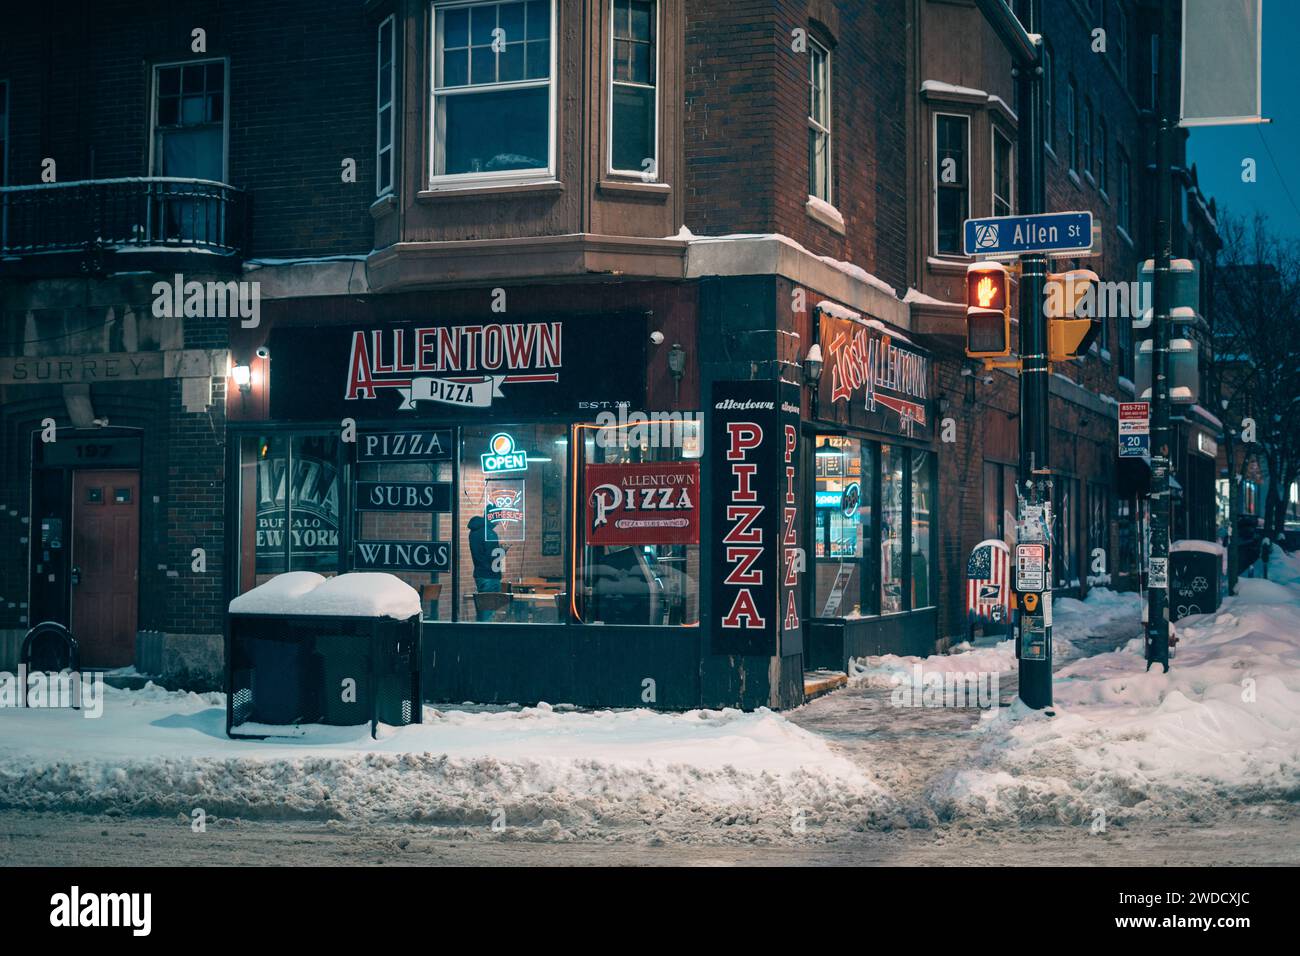 Allentown Pizza par une nuit d'hiver enneigée, Buffalo, New York Banque D'Images